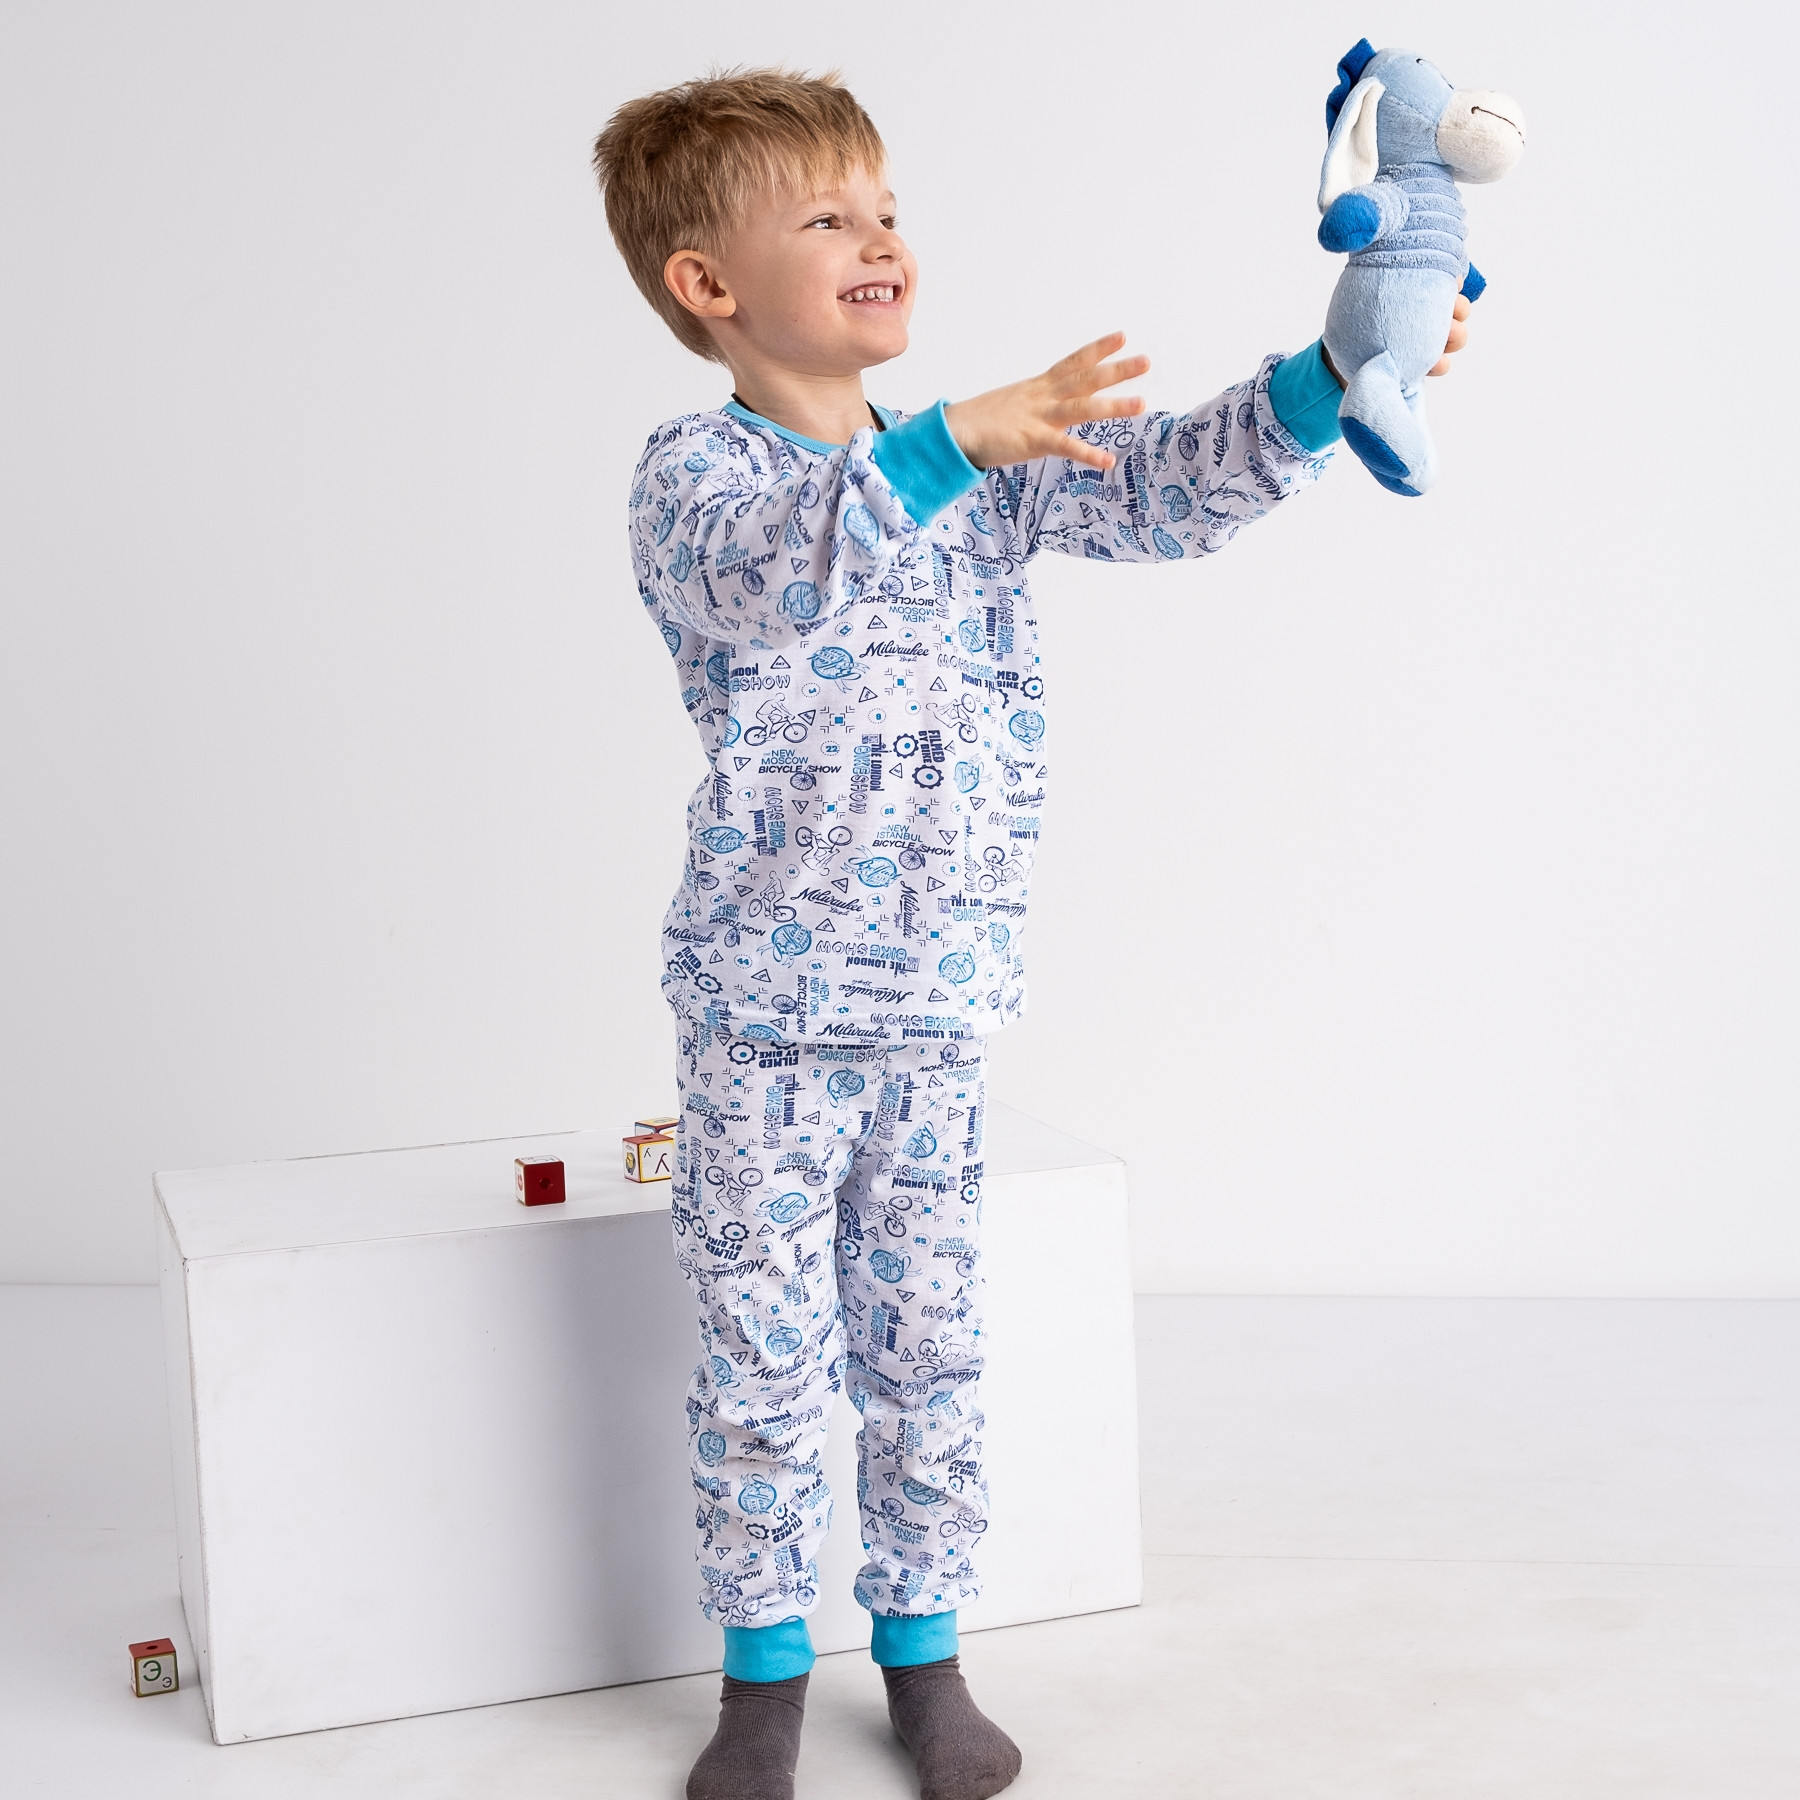 1083-89 Бома пижама белая с голубым на ребенка 4-6 лет трикотажная (3 ед. размеры: 104.110.116)